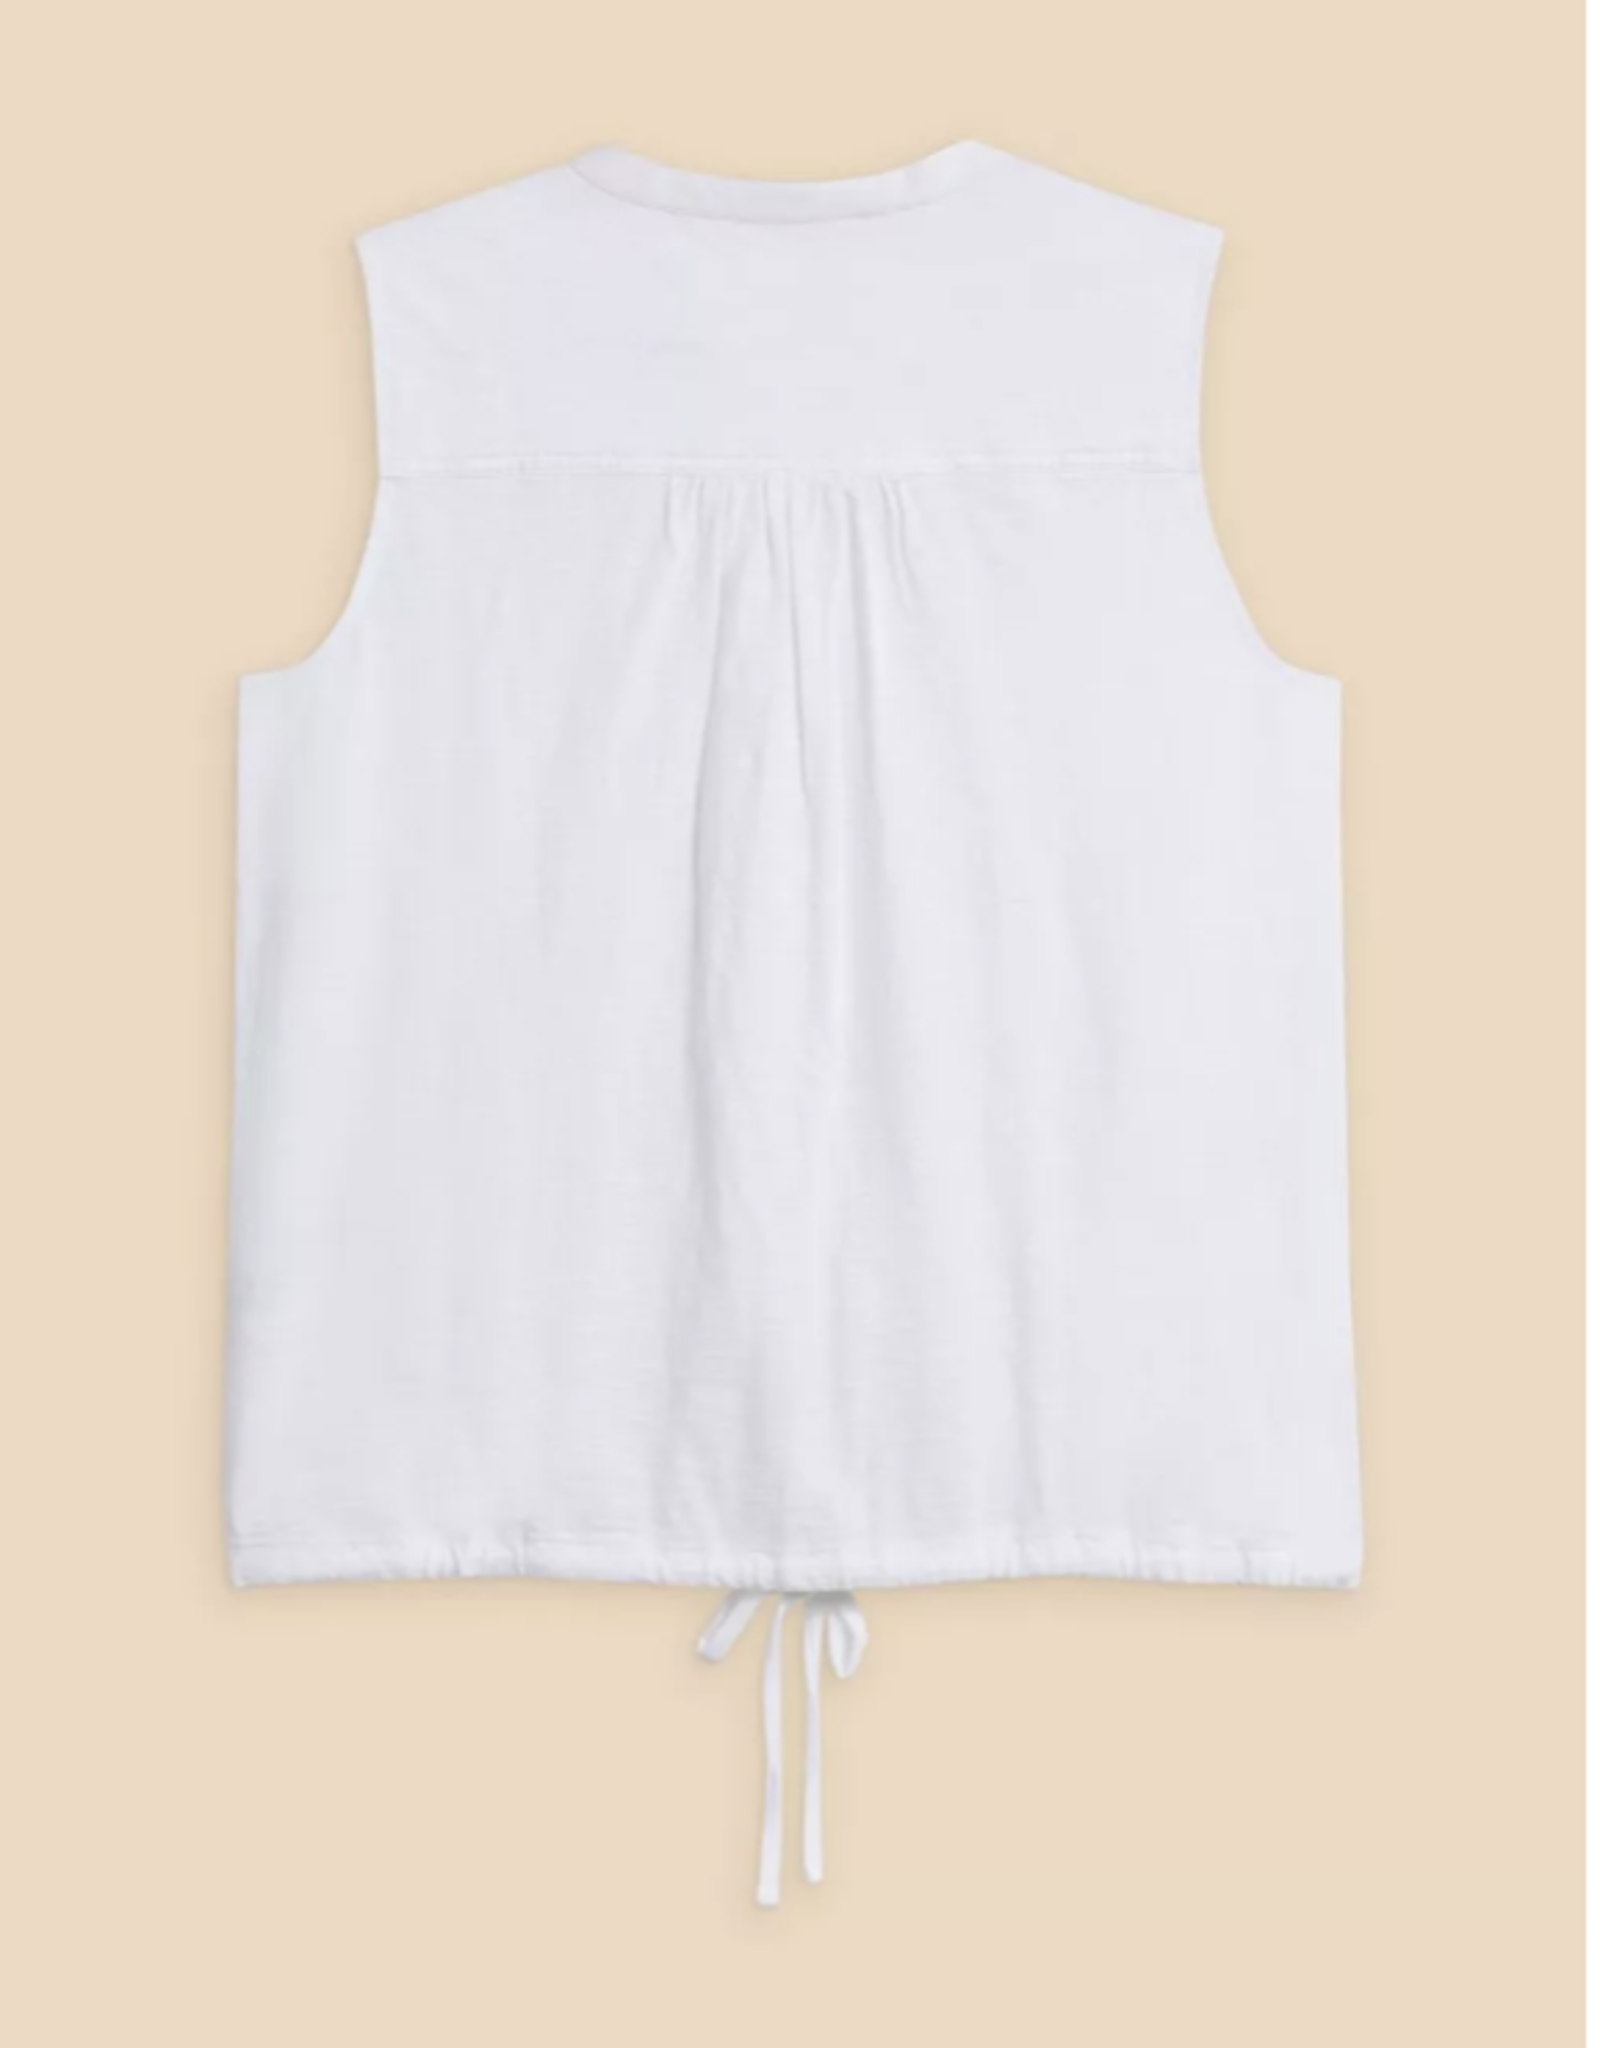 White Stuff White Stuff - SS24 Tulip Jersey Sleeveless Shirt